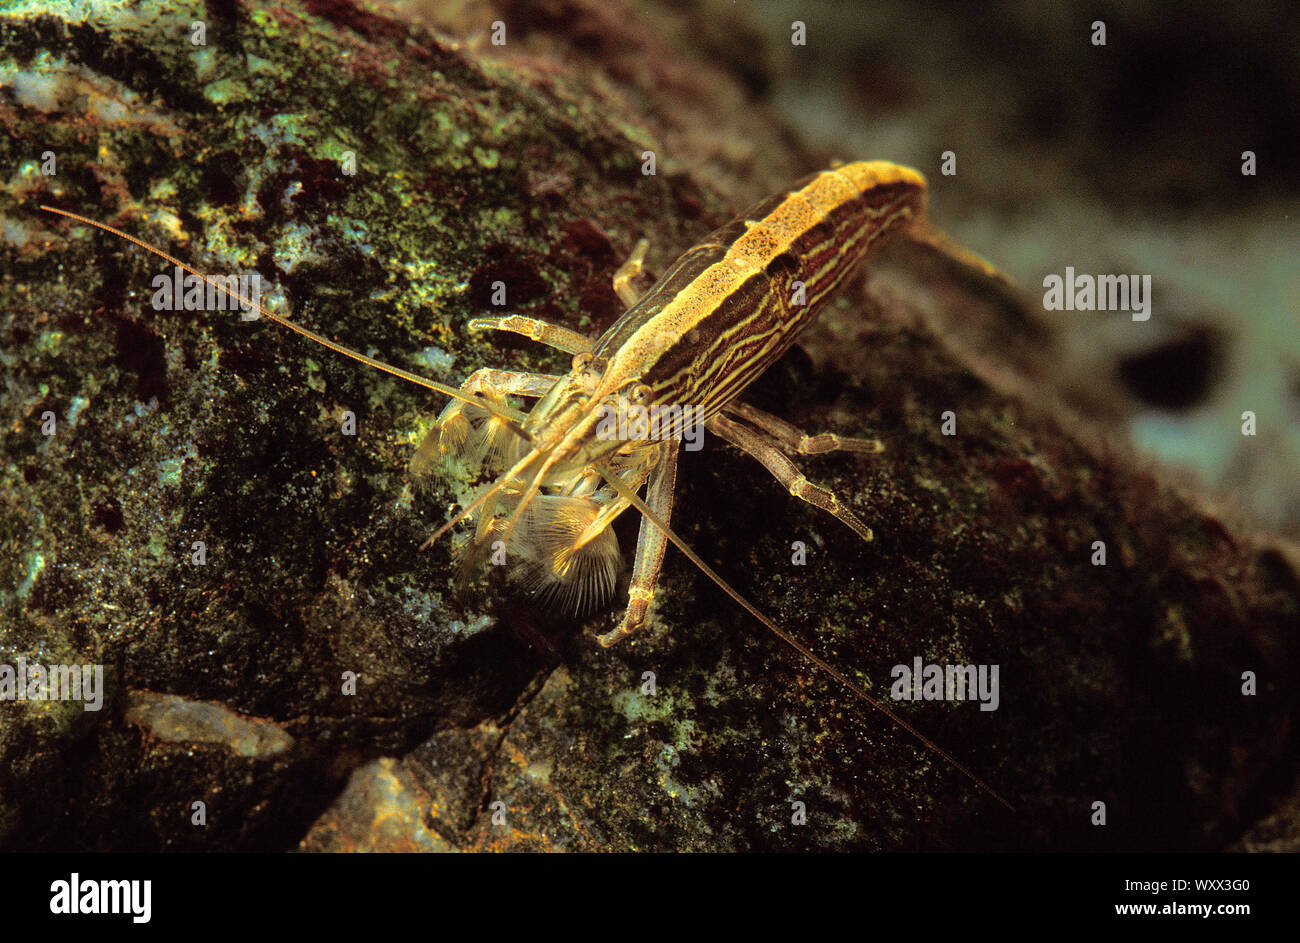 Radar shrimp (Atyopsis moluccensis) in aquarium Stock Photo